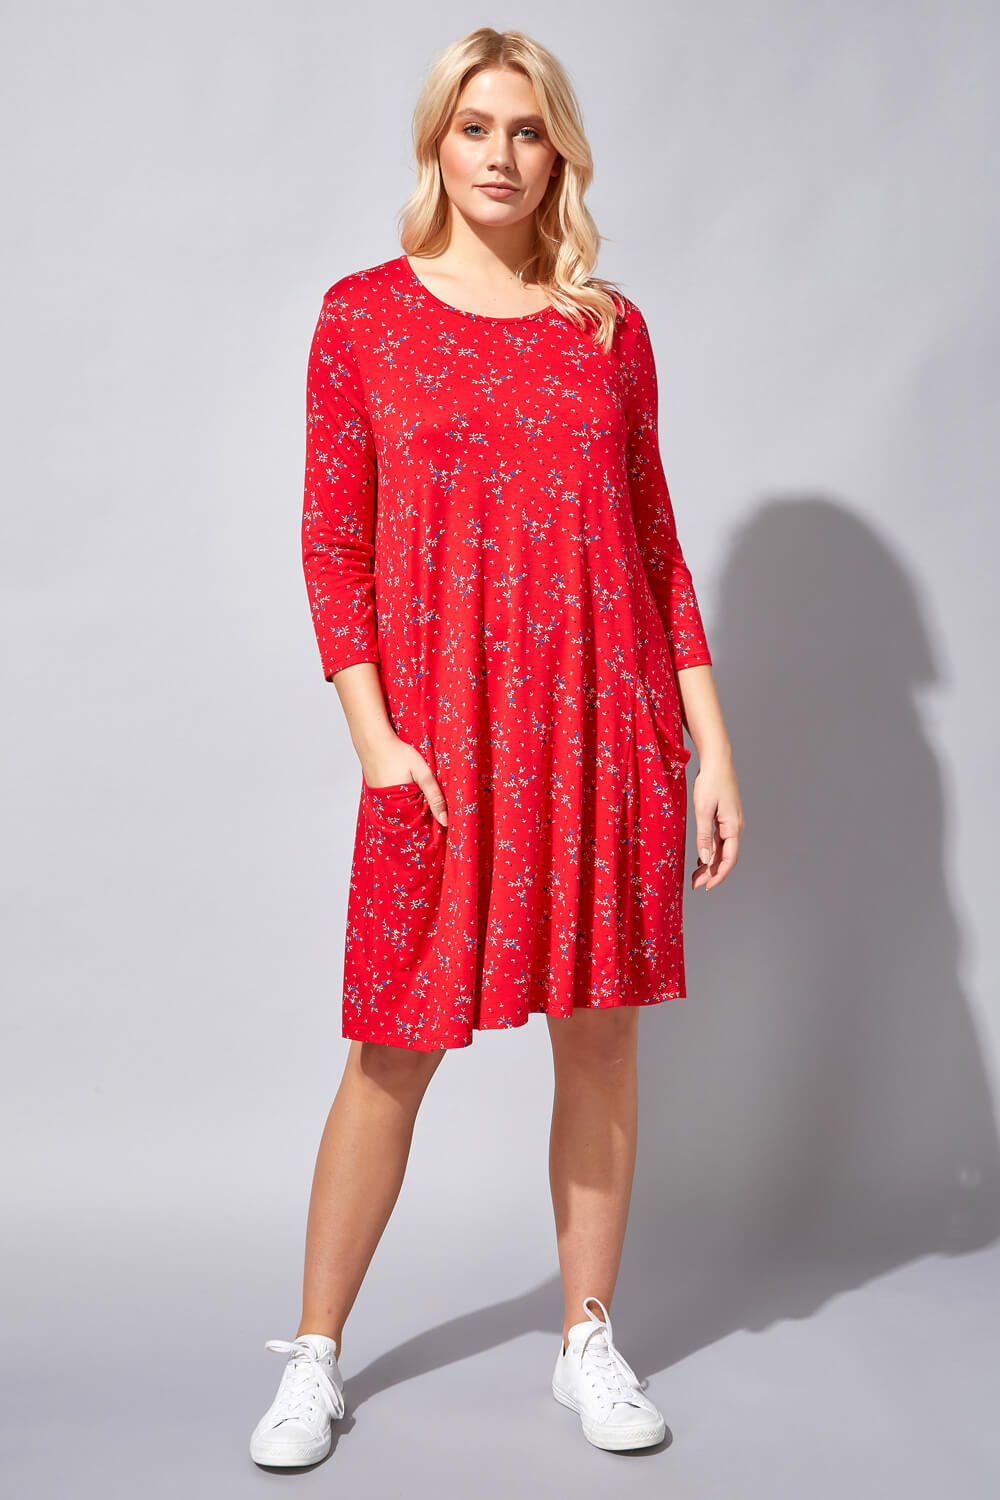 Red Floral Pocket Swing Dress, Image 2 of 4